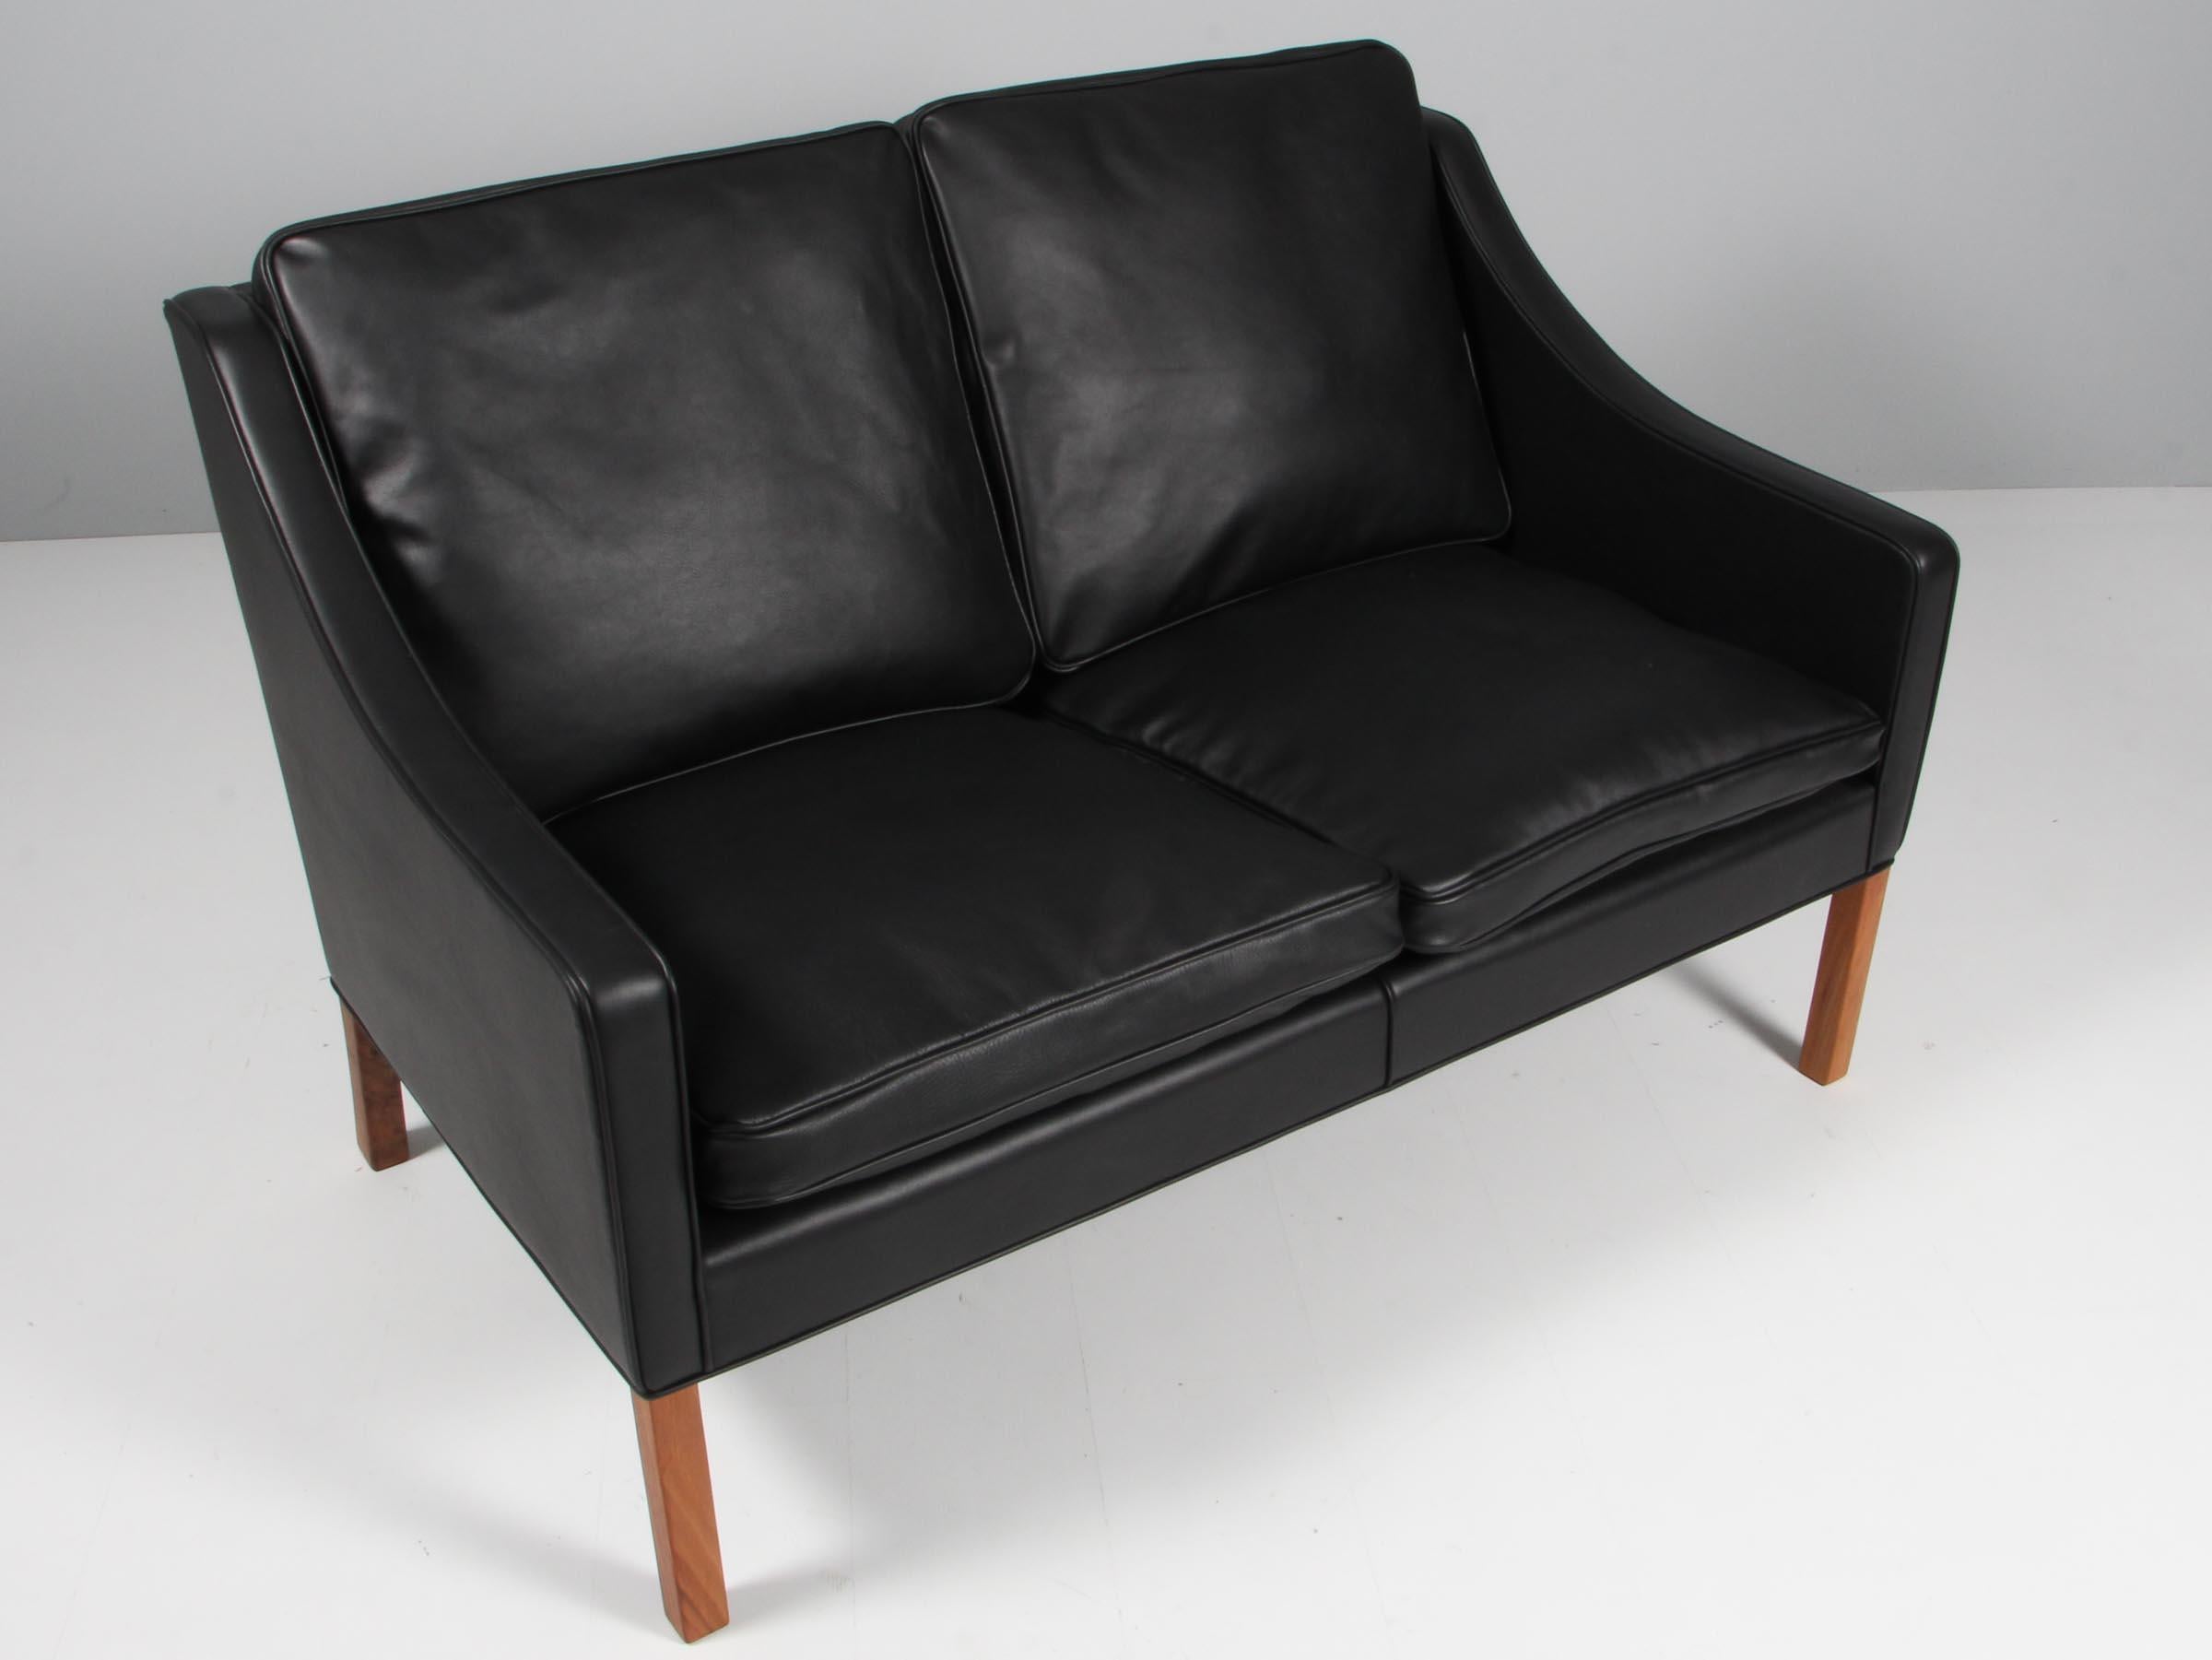 Canapé deux places de Børge Mogensen : nouveau revêtement en cuir aniline noir élégant.

Pieds en teck.

Modèle 2208, fabriqué par Fredericia furniture.